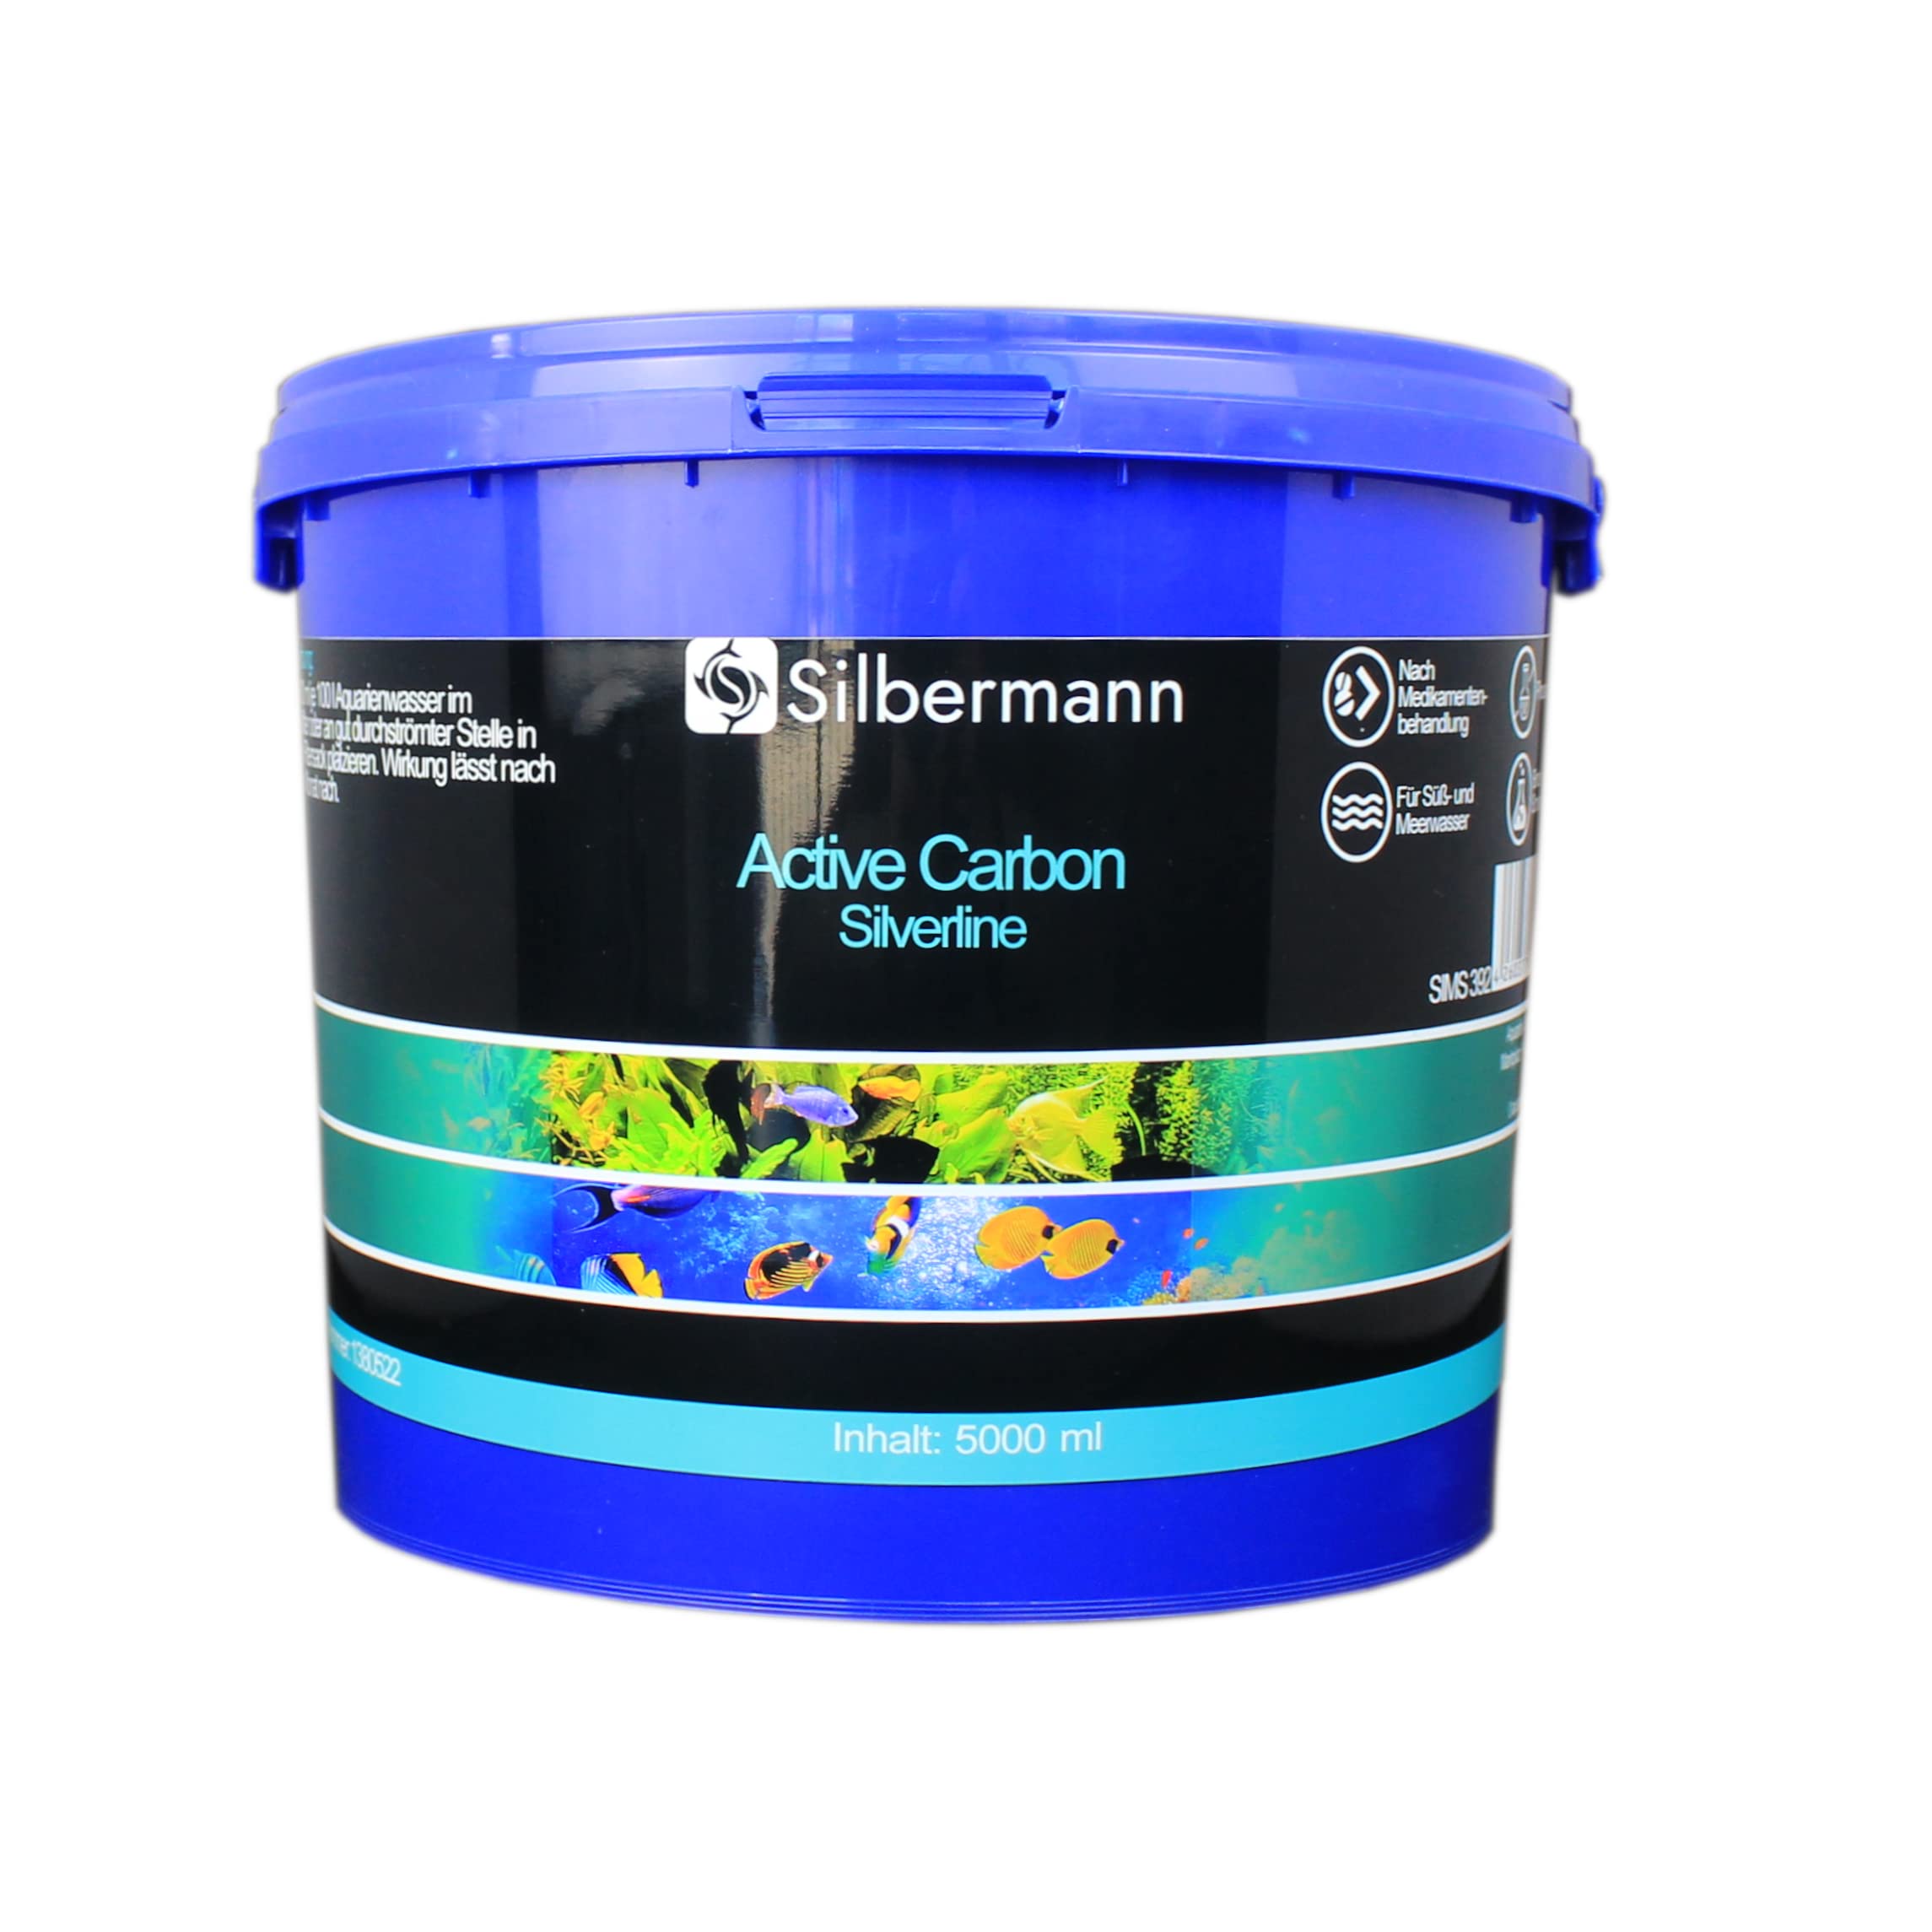 Silbermann Aktivkohle, Filterkohle, für Meerwasseraquarien, in verschiedenen Qualitäten und Größen (Silverline, 5000 ml)